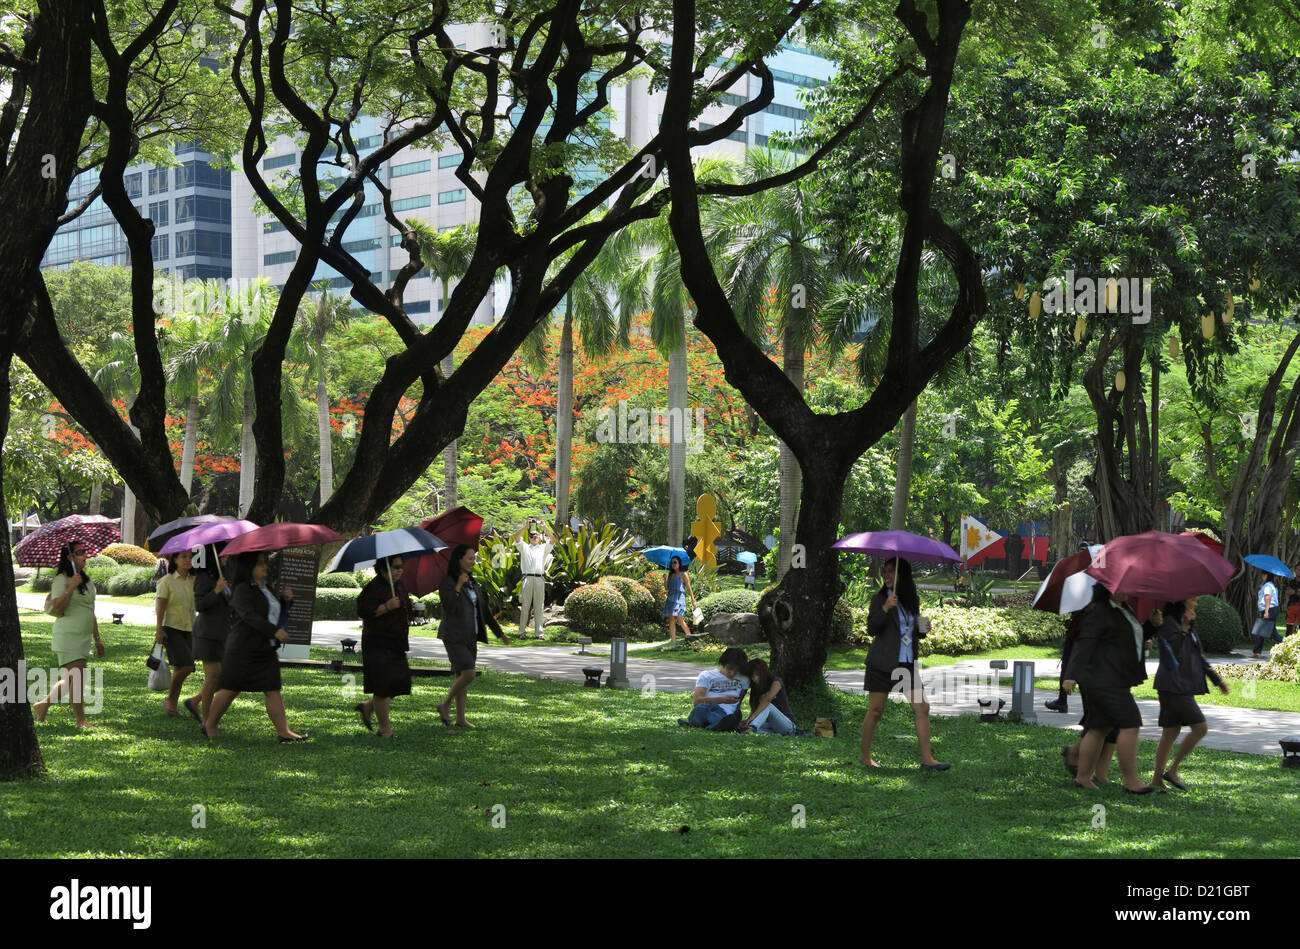 Les femmes avec des parapluies, Ayala Triangle Park de la ville de Makati, l'île de Luzon, Philippines, Asie Banque D'Images